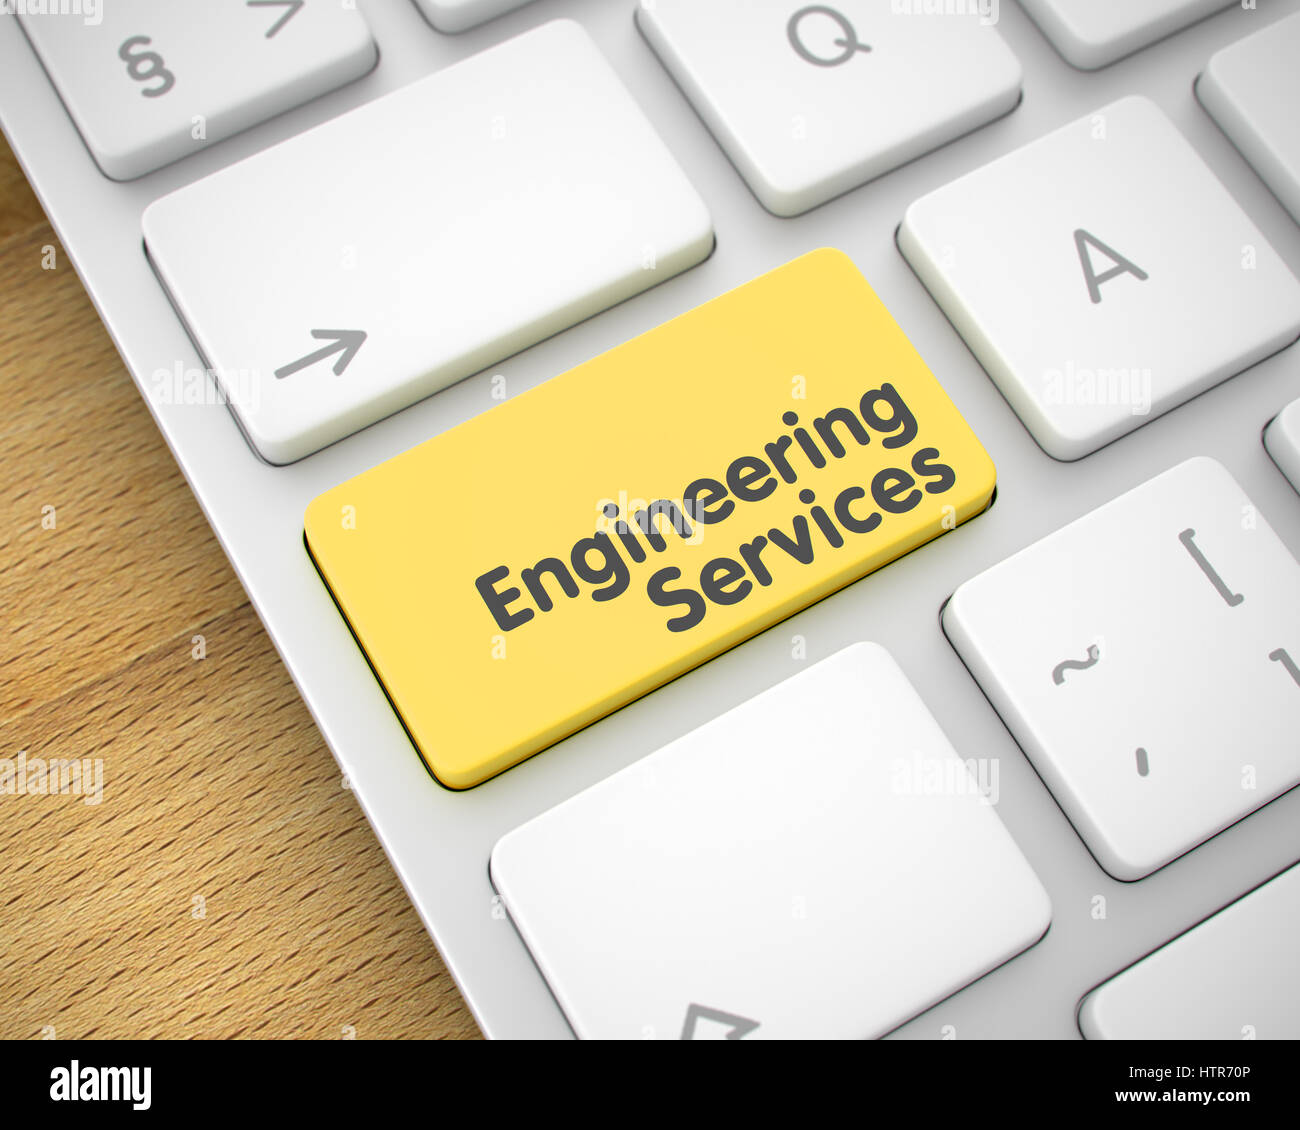 Engineering Services - Inschrift auf die gelbe Taste Stockfoto